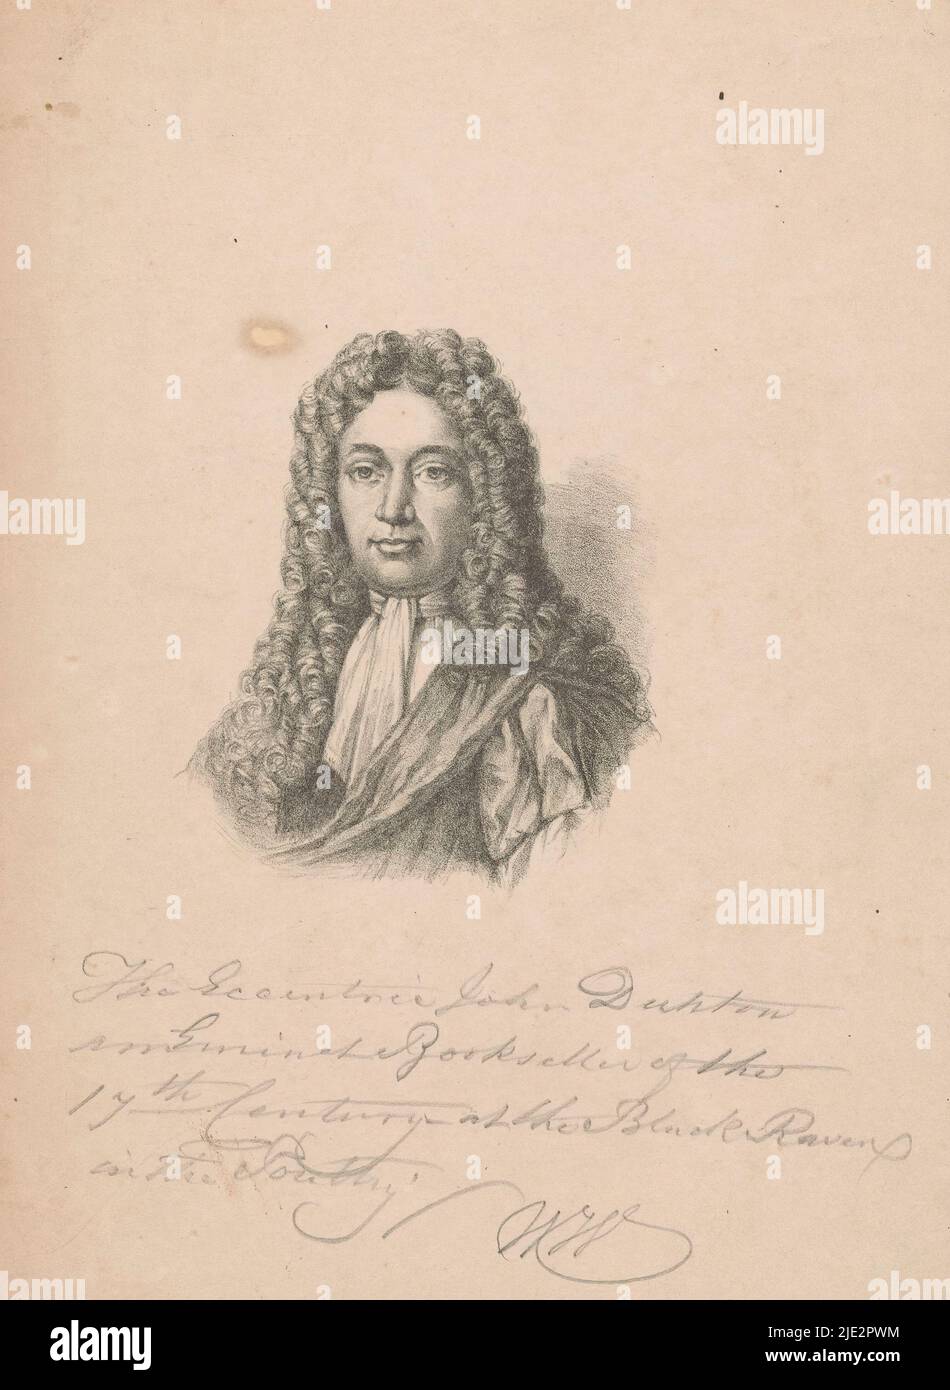 Porträt von John Dunton, Buchhändler in London, Druckerei: Anonymous, c. 1825 - c. 1900, Papier, Höhe 226 mm × Breite 164 mm Stockfoto